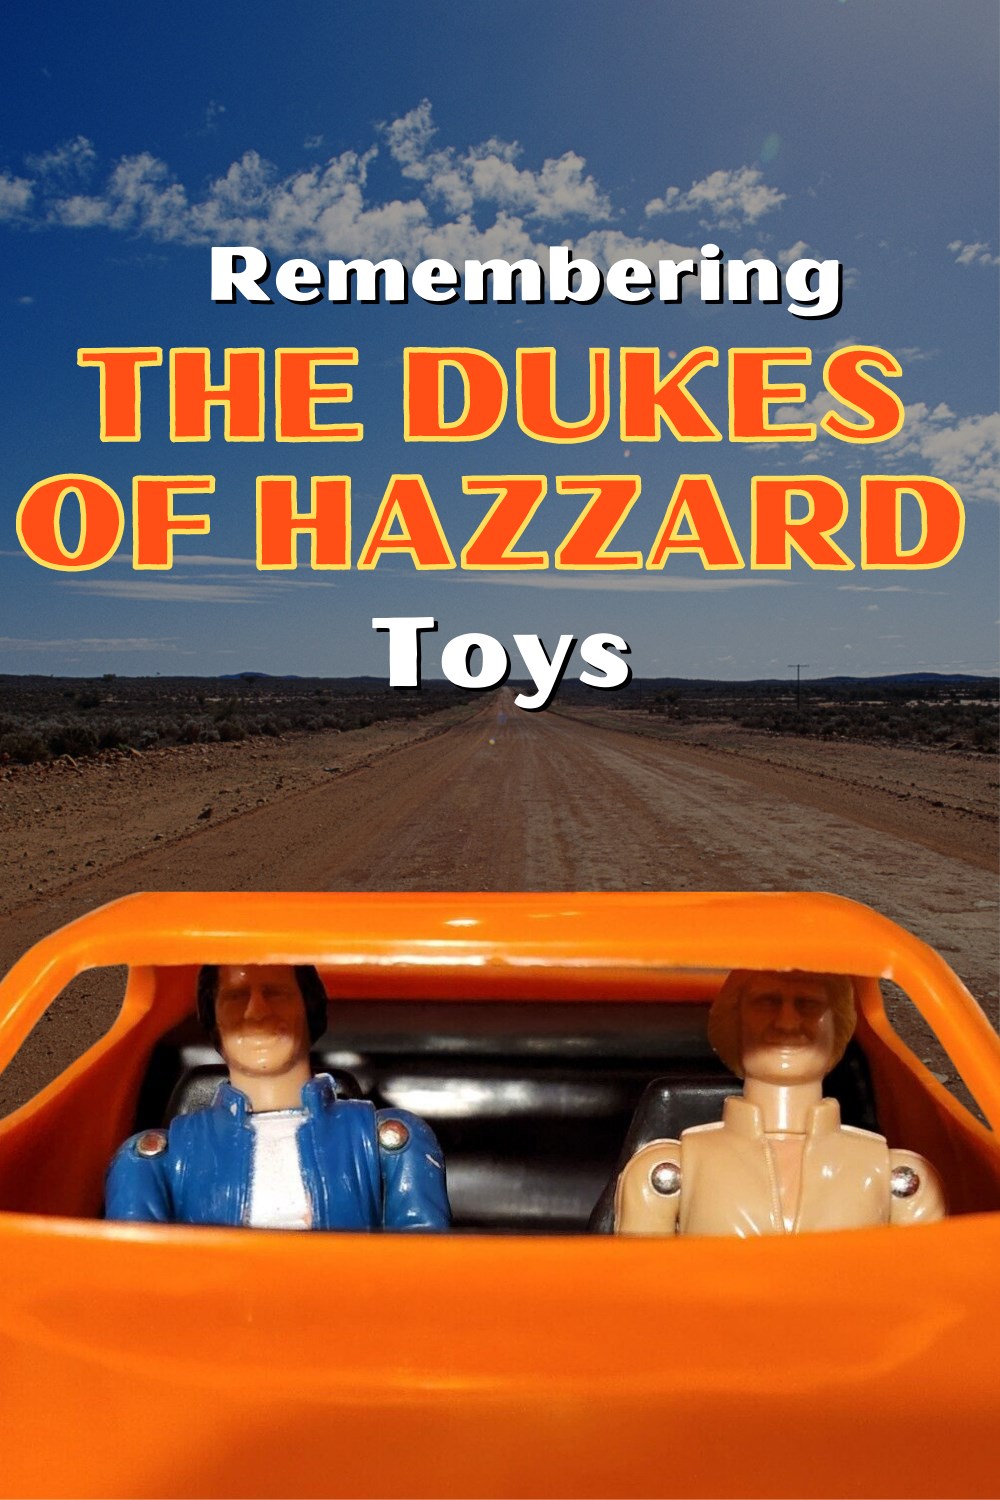 History Of The Dukes Of Hazzard Toys From MEGO